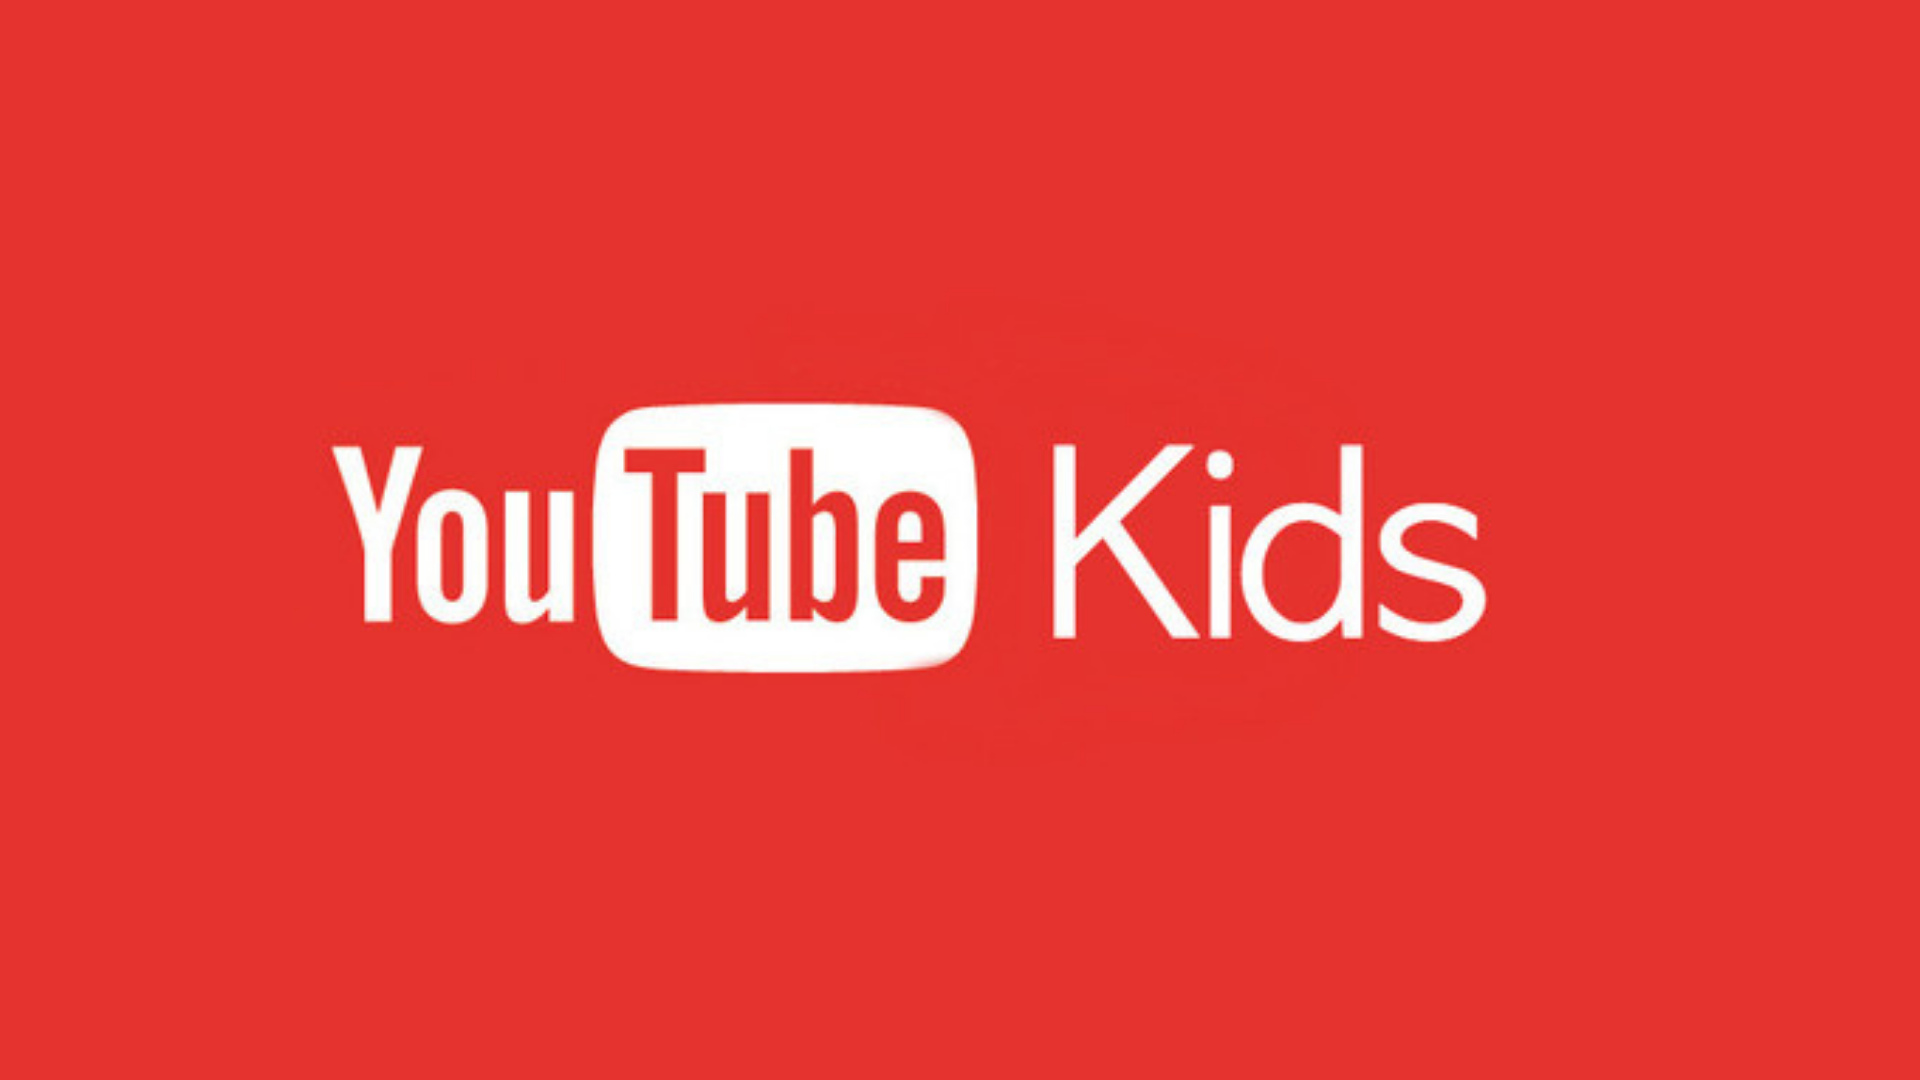 Youtube Kids Artık Türkiye'de! | Arfbot Blog